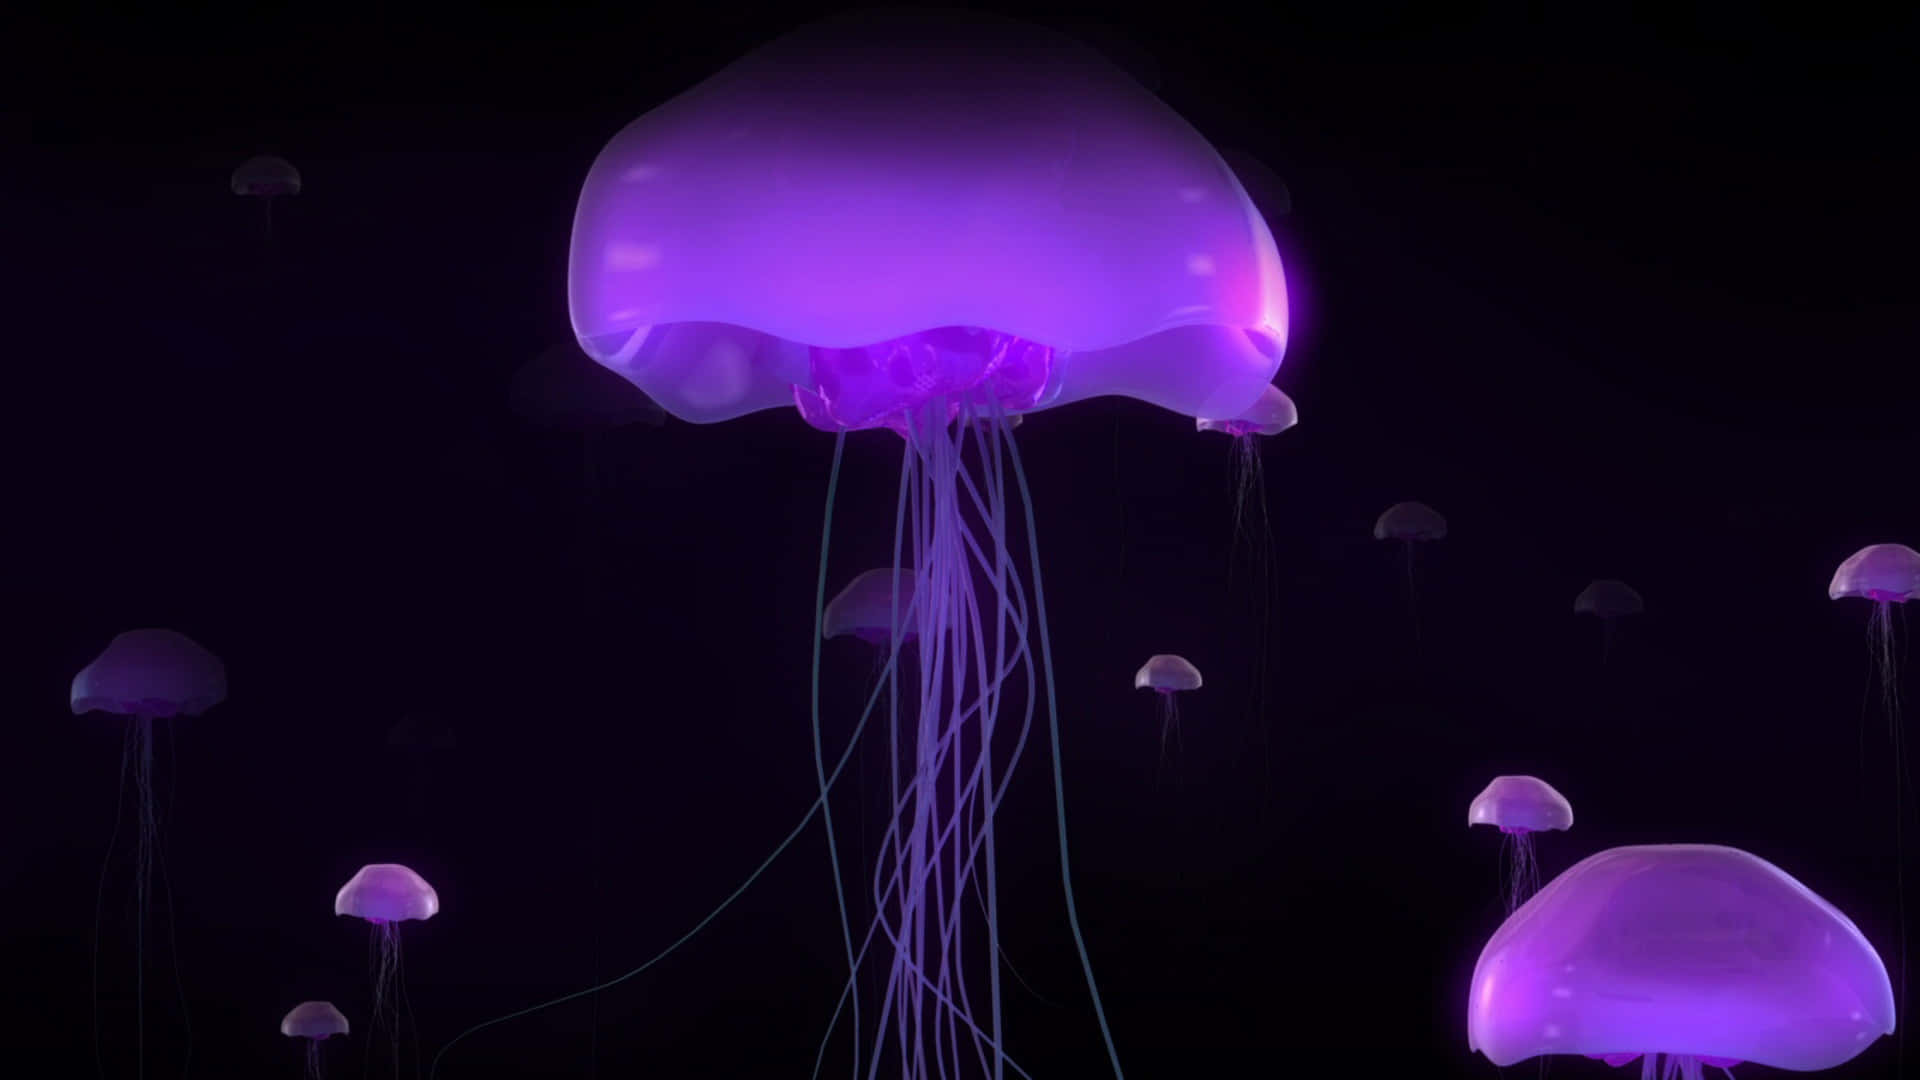 A Stunning Image Of A Beautiful 4k Jellyfish